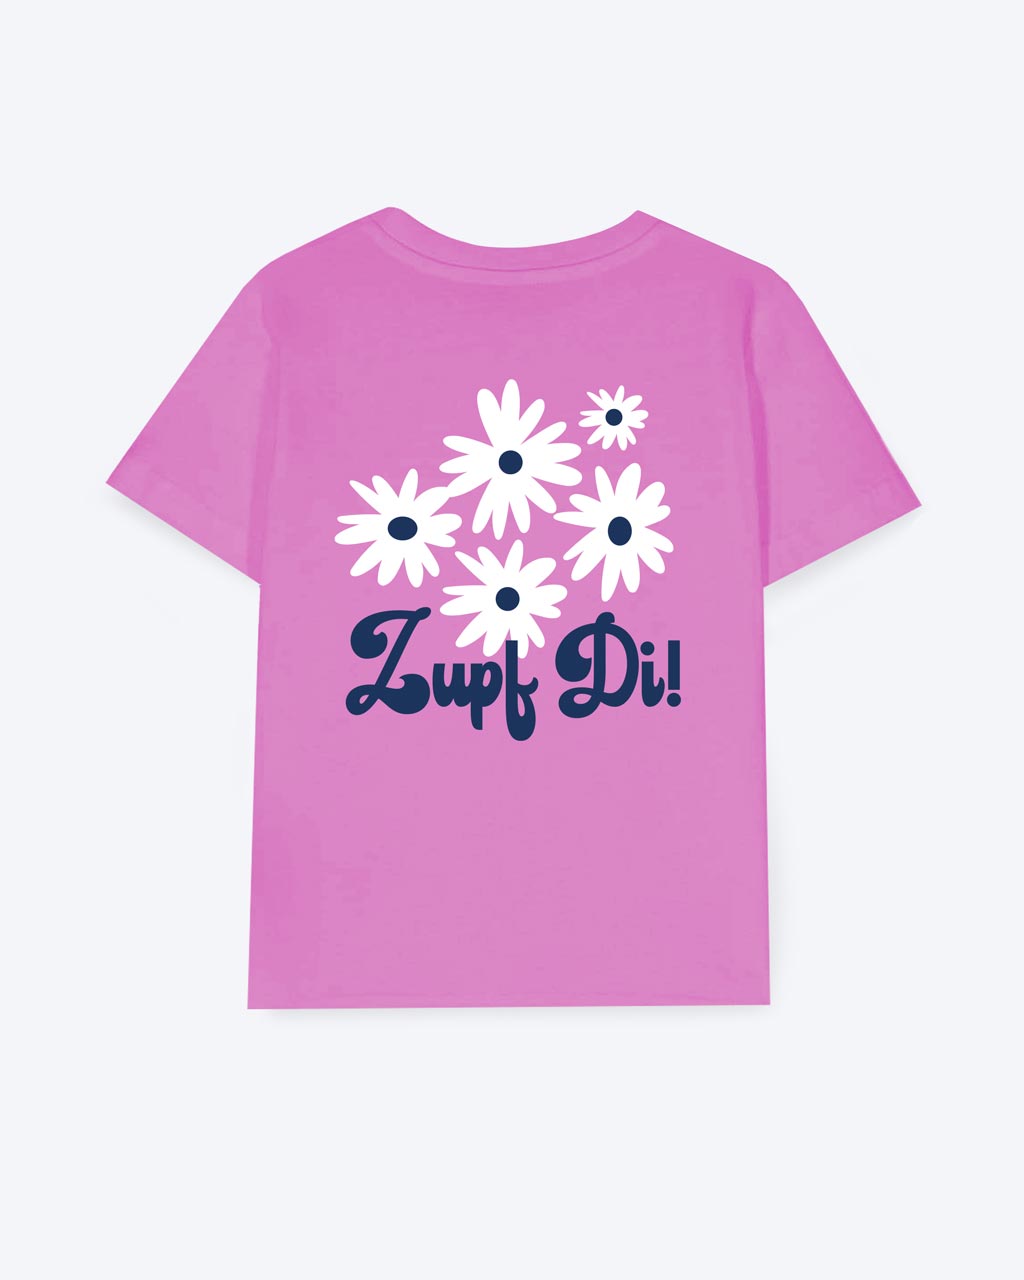 Pinkes T-Shirt mit einem weißem Blumenmotiv und einer dunkelblauen "Zupf Di!" Schrift als Backprint.